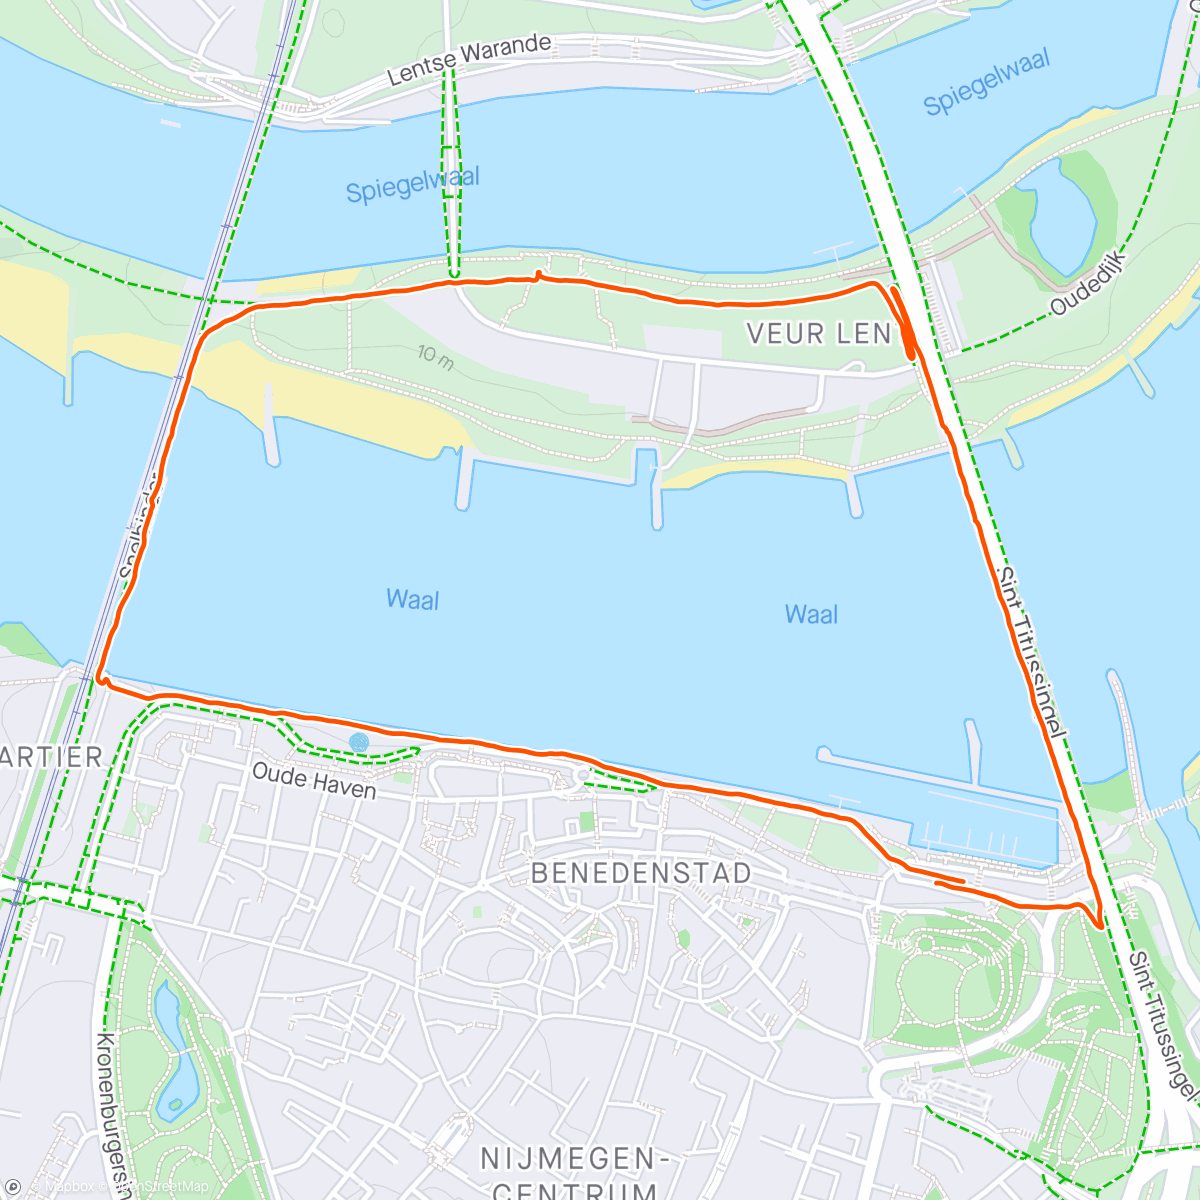 「Bruggenrondje Nijmegen」活動的地圖